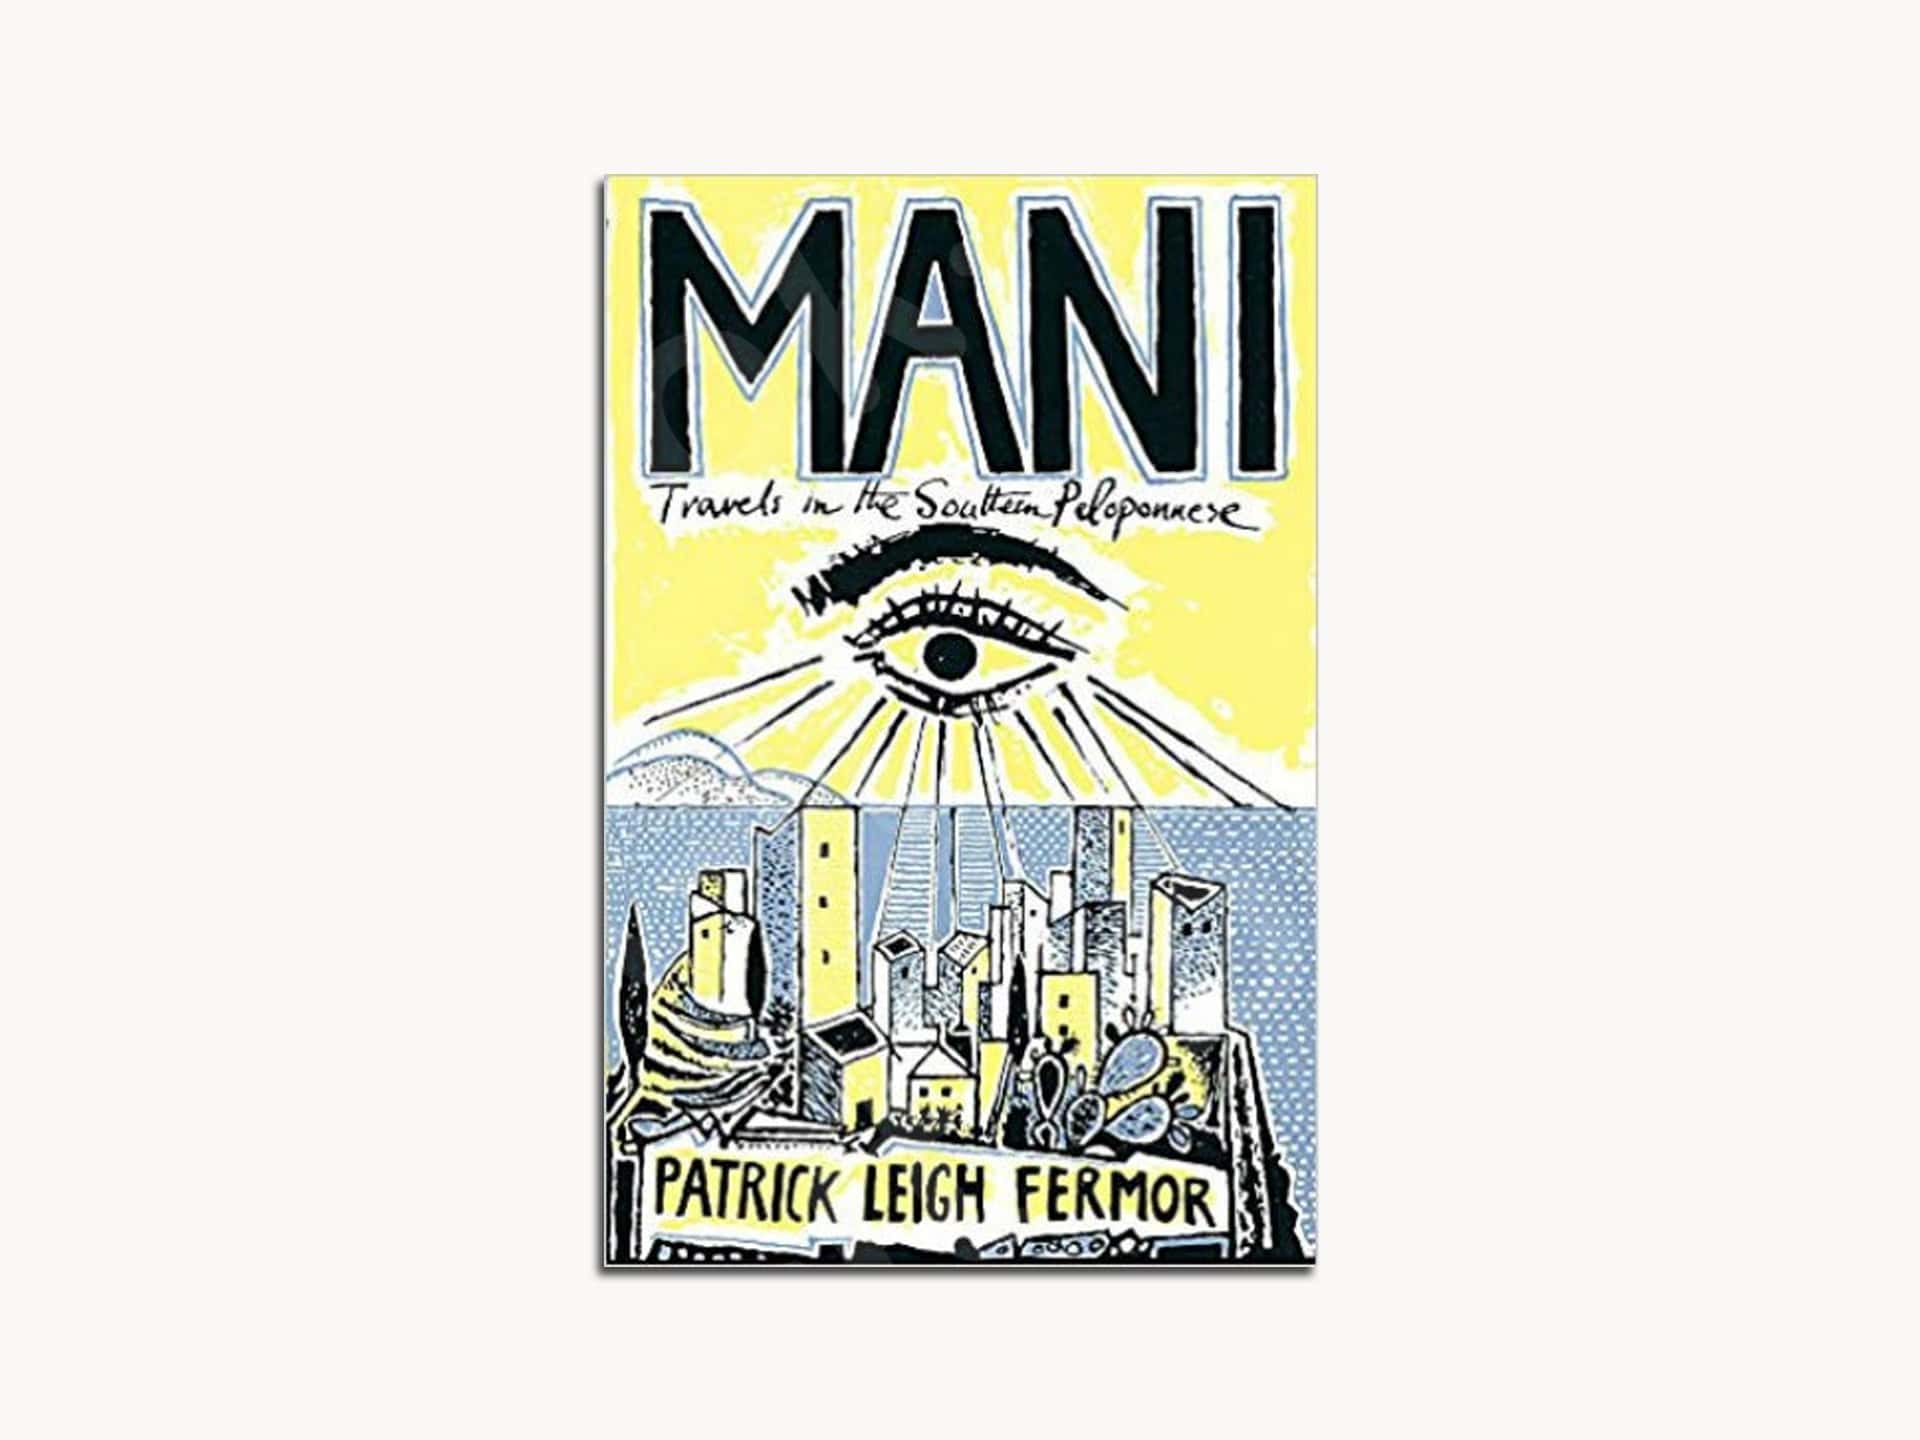 Βιβλίο Mani: Travels in the Southern Peloponnese by Patrick Leigh Fermor